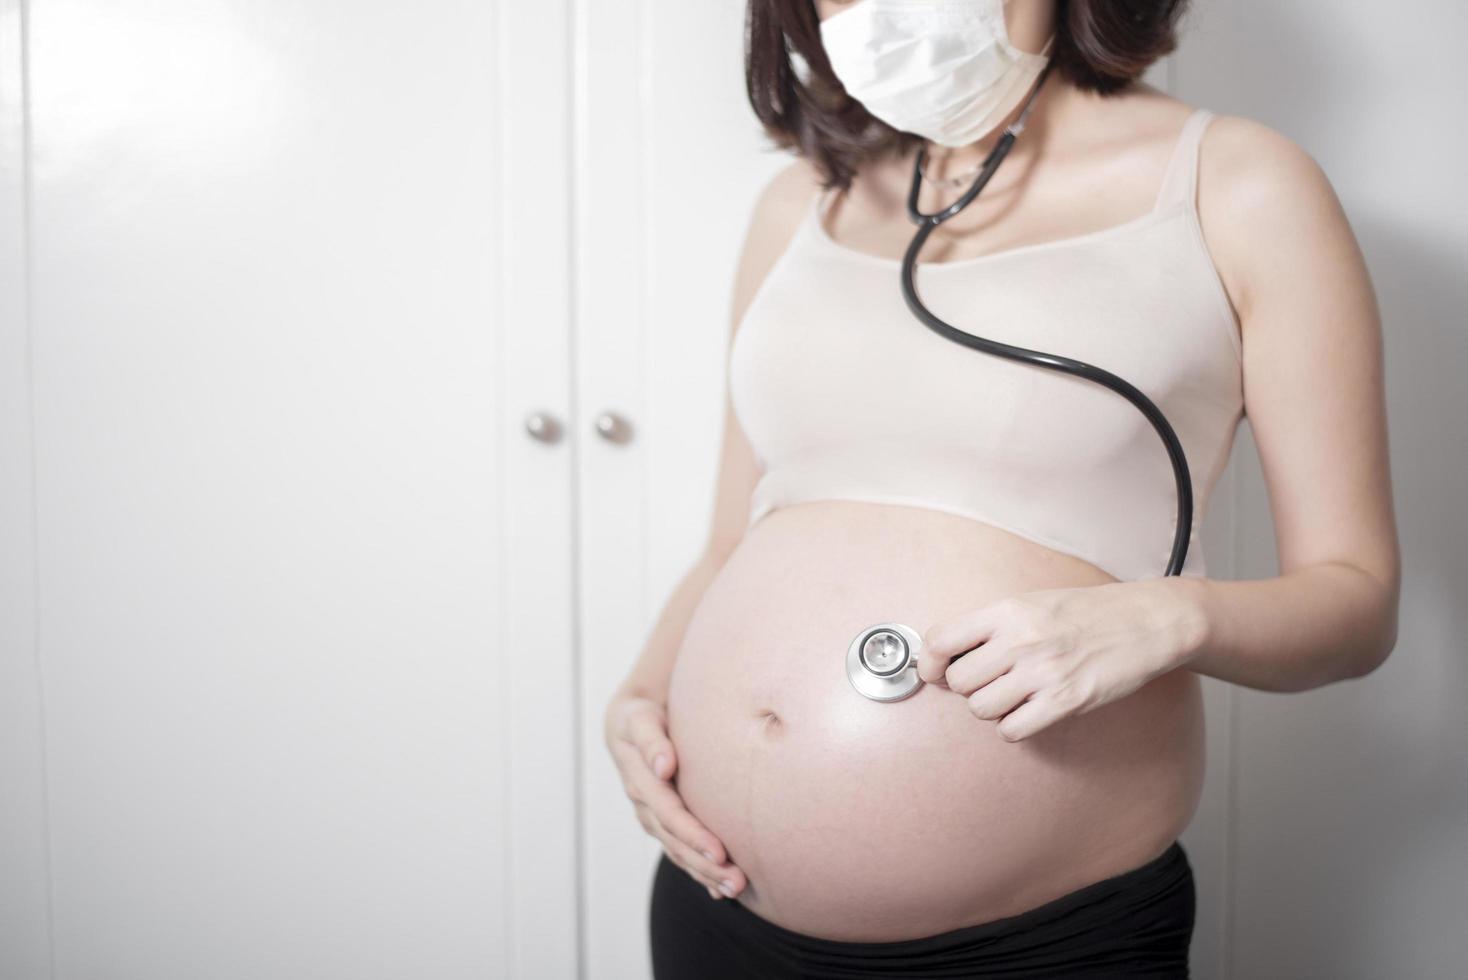 schöne asiatische schwangere frau trägt schutzmaske in ihrem haus, coronavirus-schutzkonzept foto